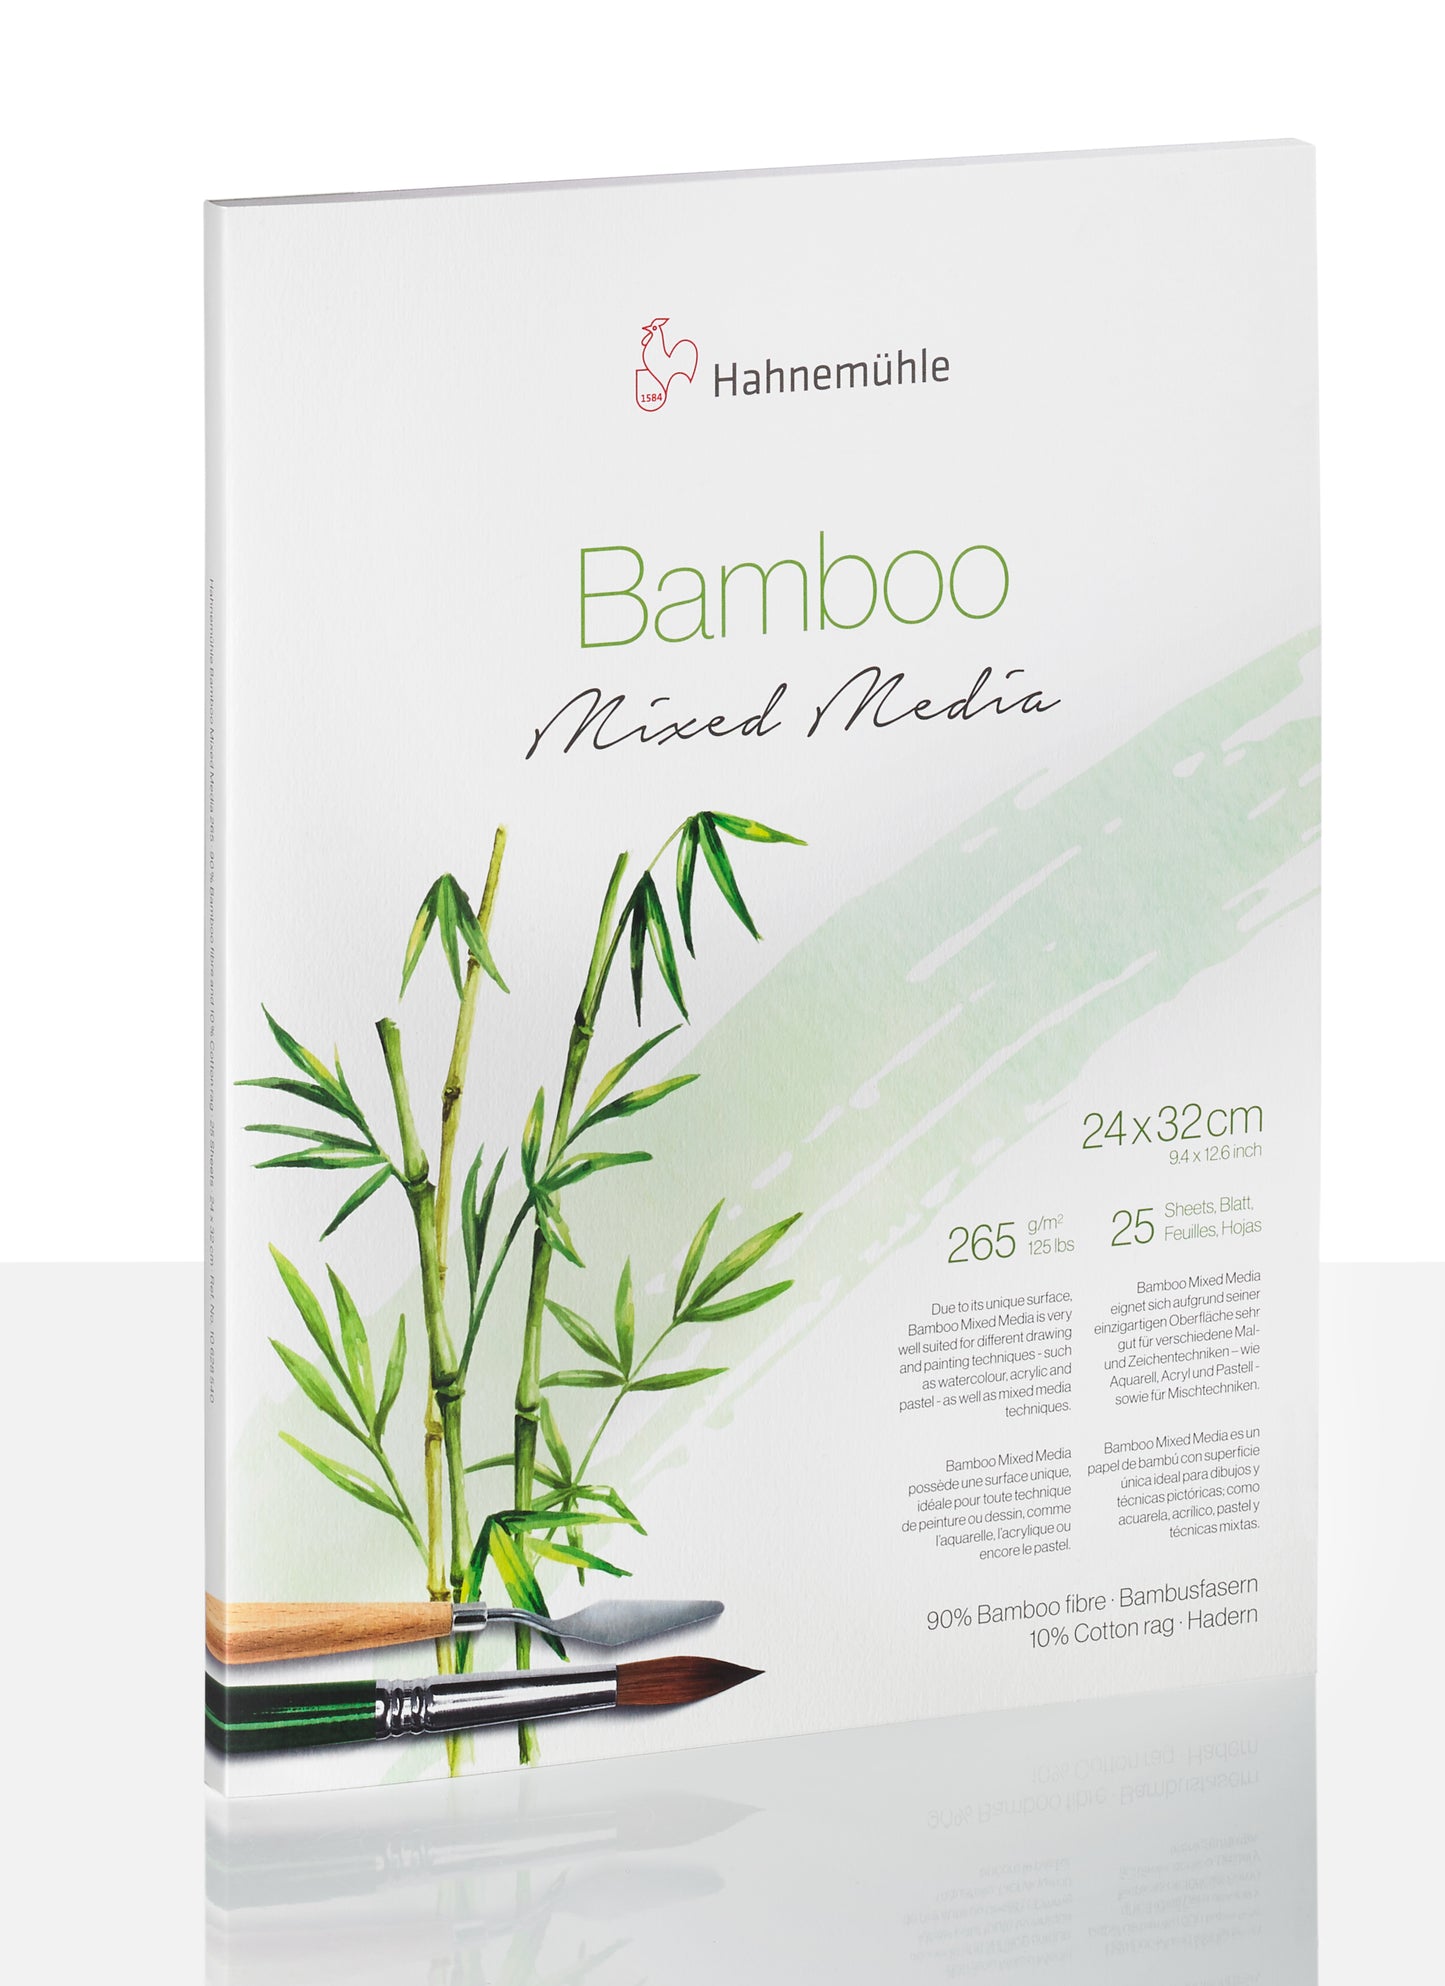 Blocs en bambou mixte par Hahnemuhle